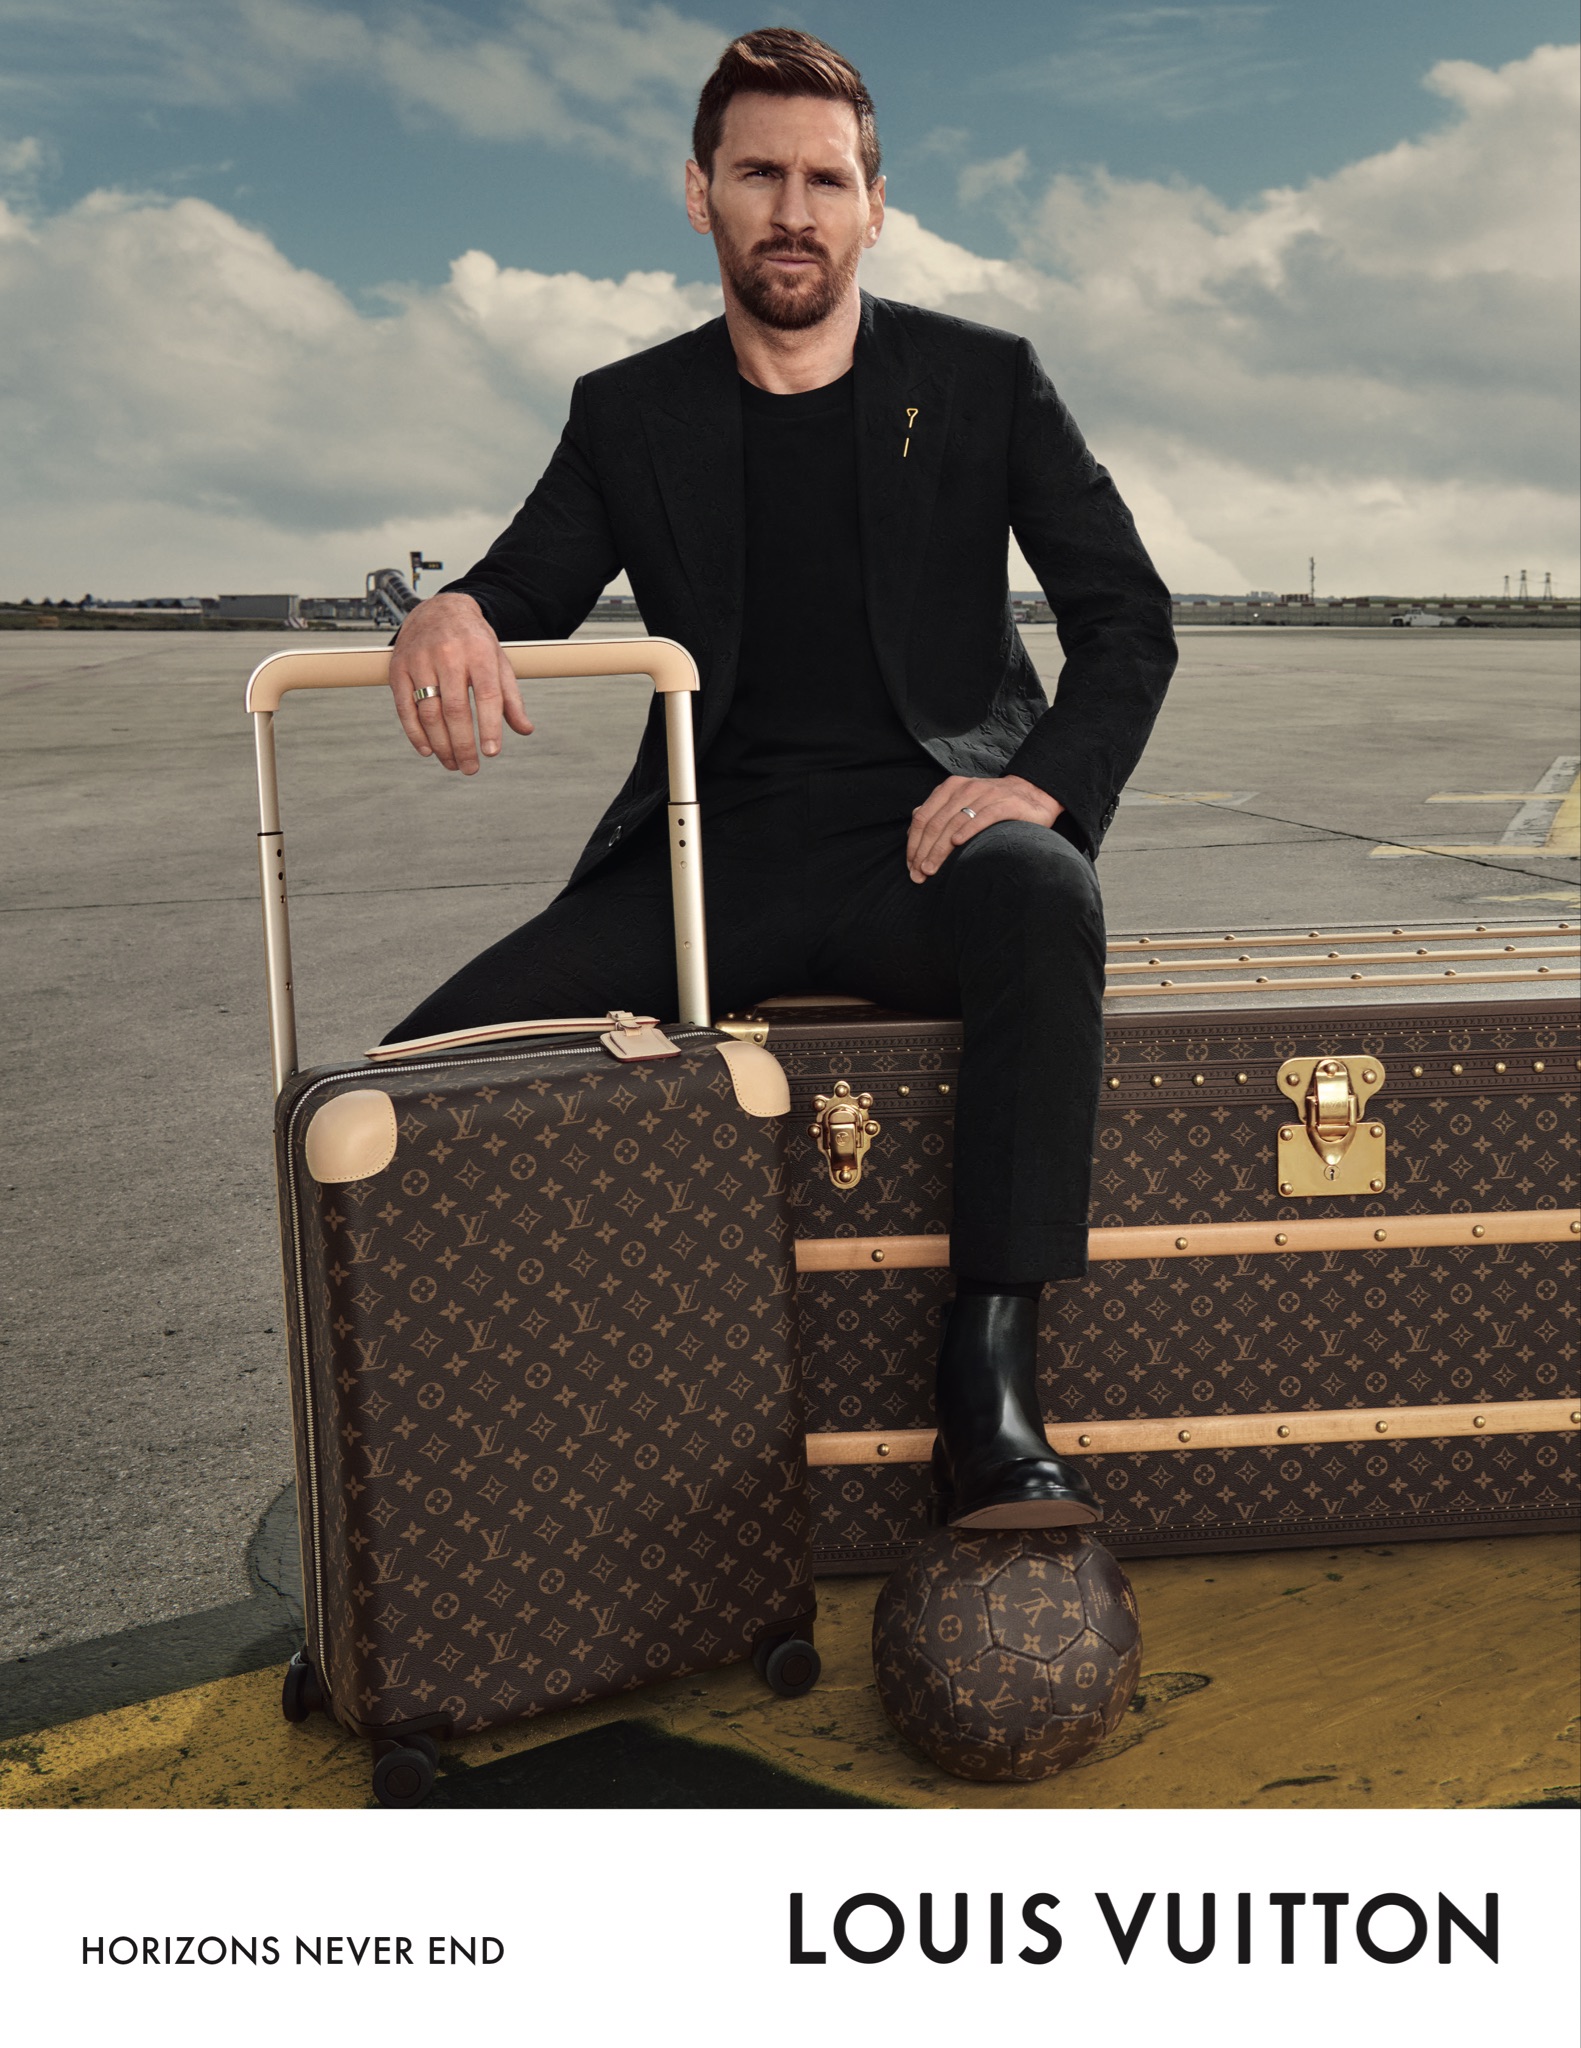 Lionel Messi khuấy động mùa du lịch trong chiến dịch “Horizon Never Ends” của Louis Vuitton - Ảnh 3.